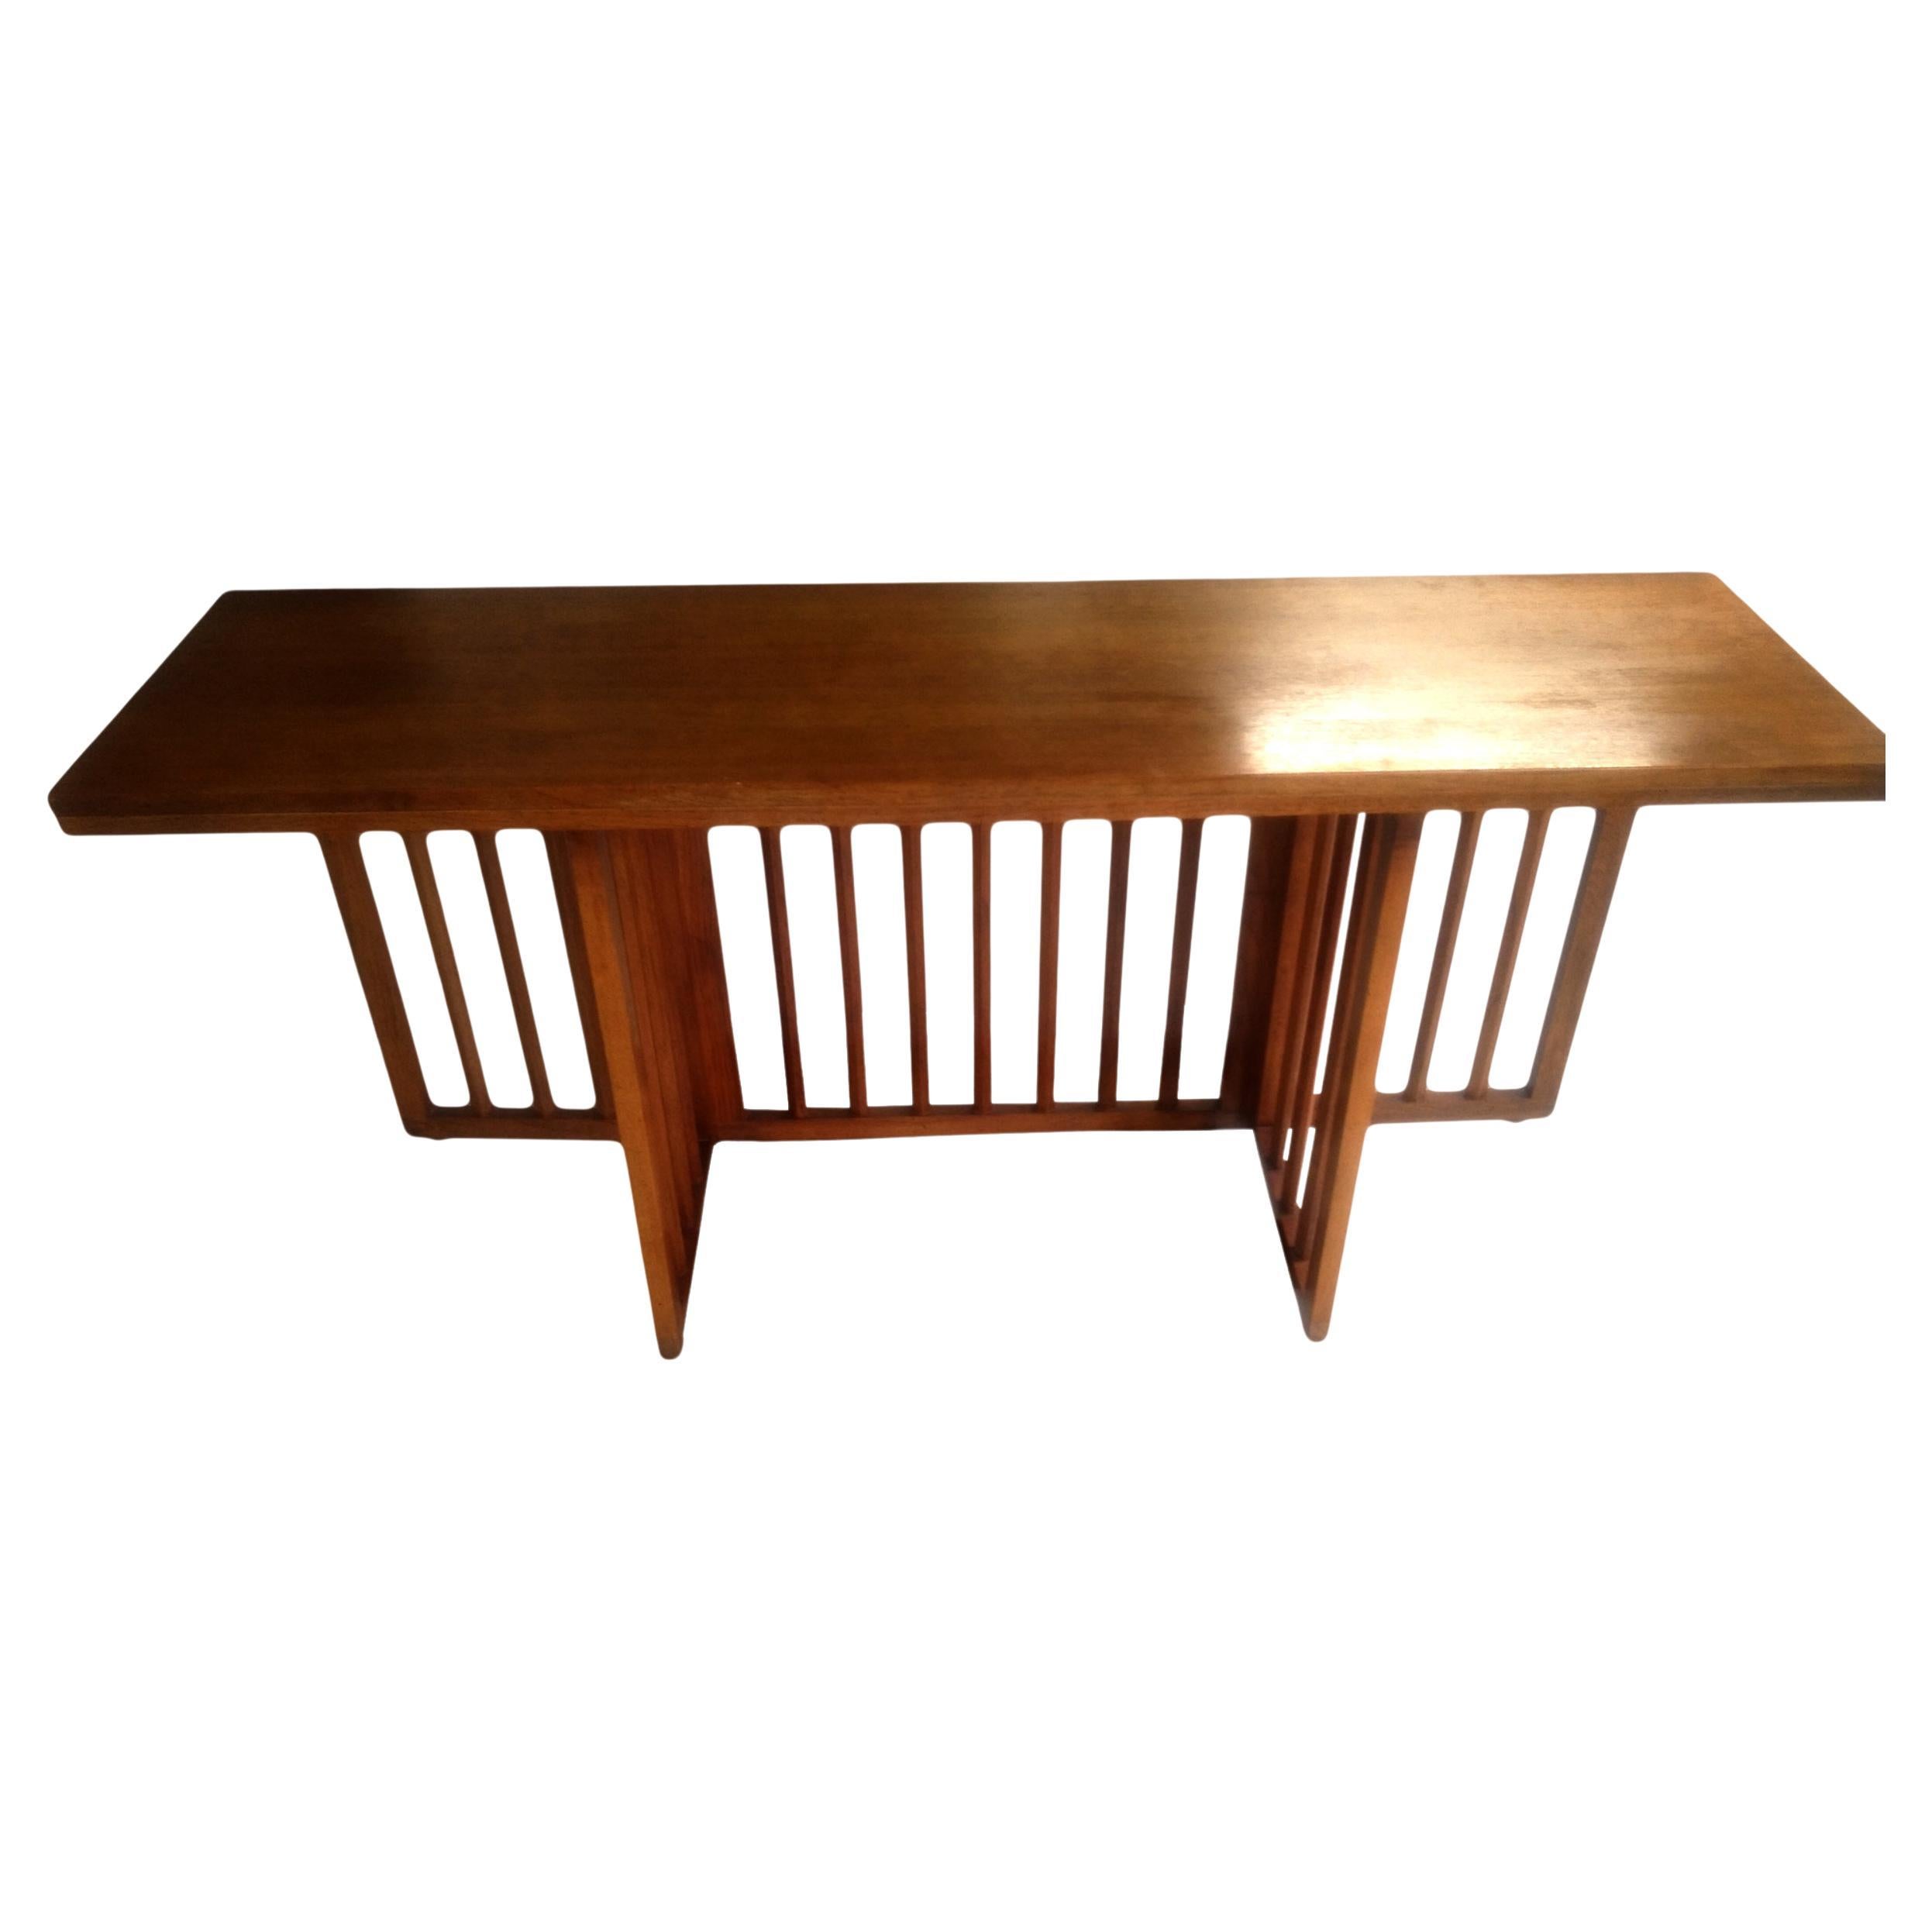 Klappbarer Esstisch oder Konsolentisch von Harvey Probber

Vielseitiges Nussbaumholz mit ausklappbarem Untergestell, das den Tisch von einer Konsole zu einem Esstisch erweitert
 zwei ausziehbare Schlösser an beiden Enden
 Abmessungen, wenn der